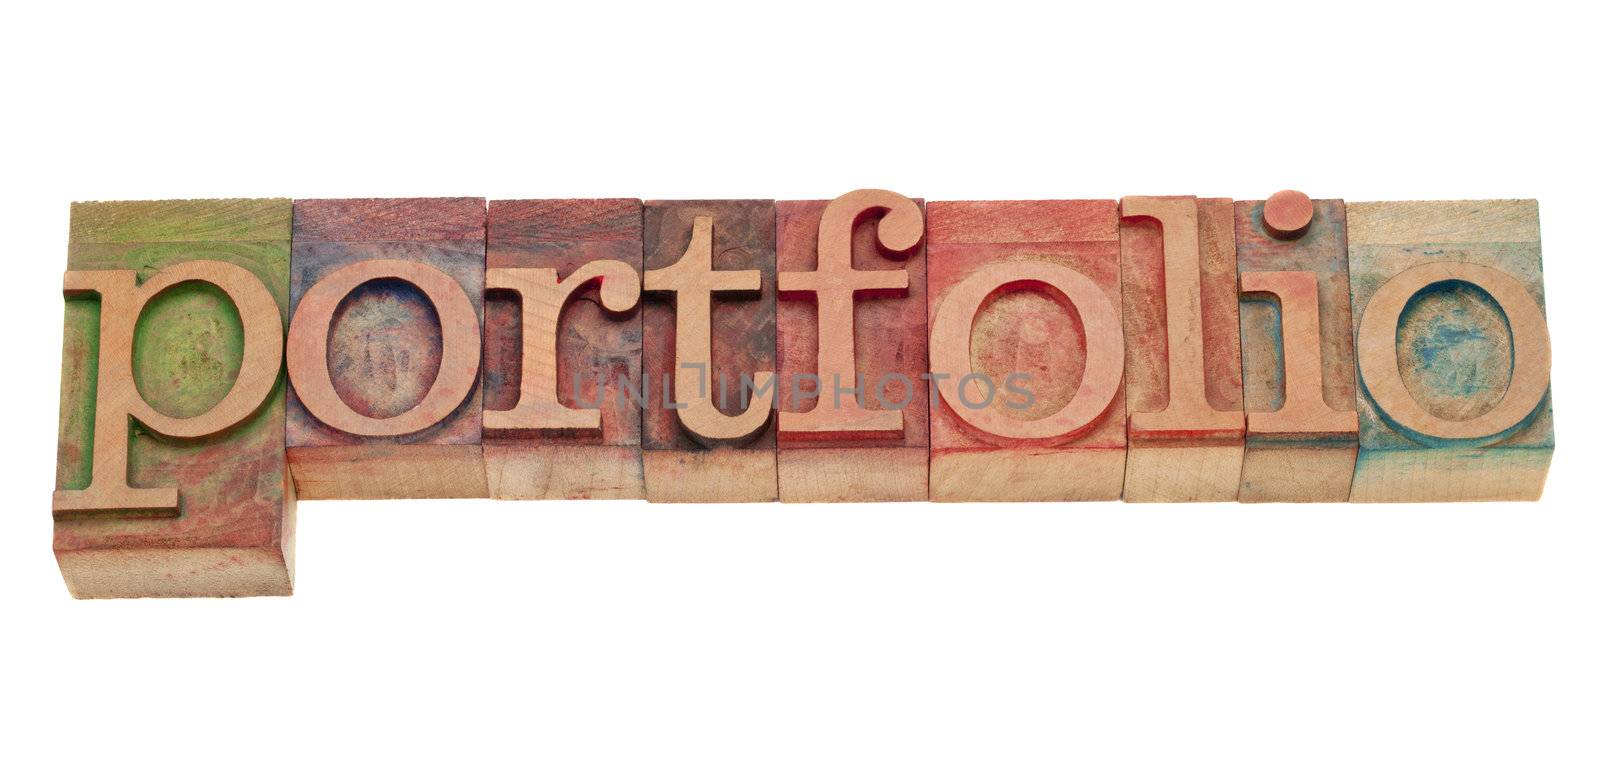 portfolio word in letterpress type by PixelsAway